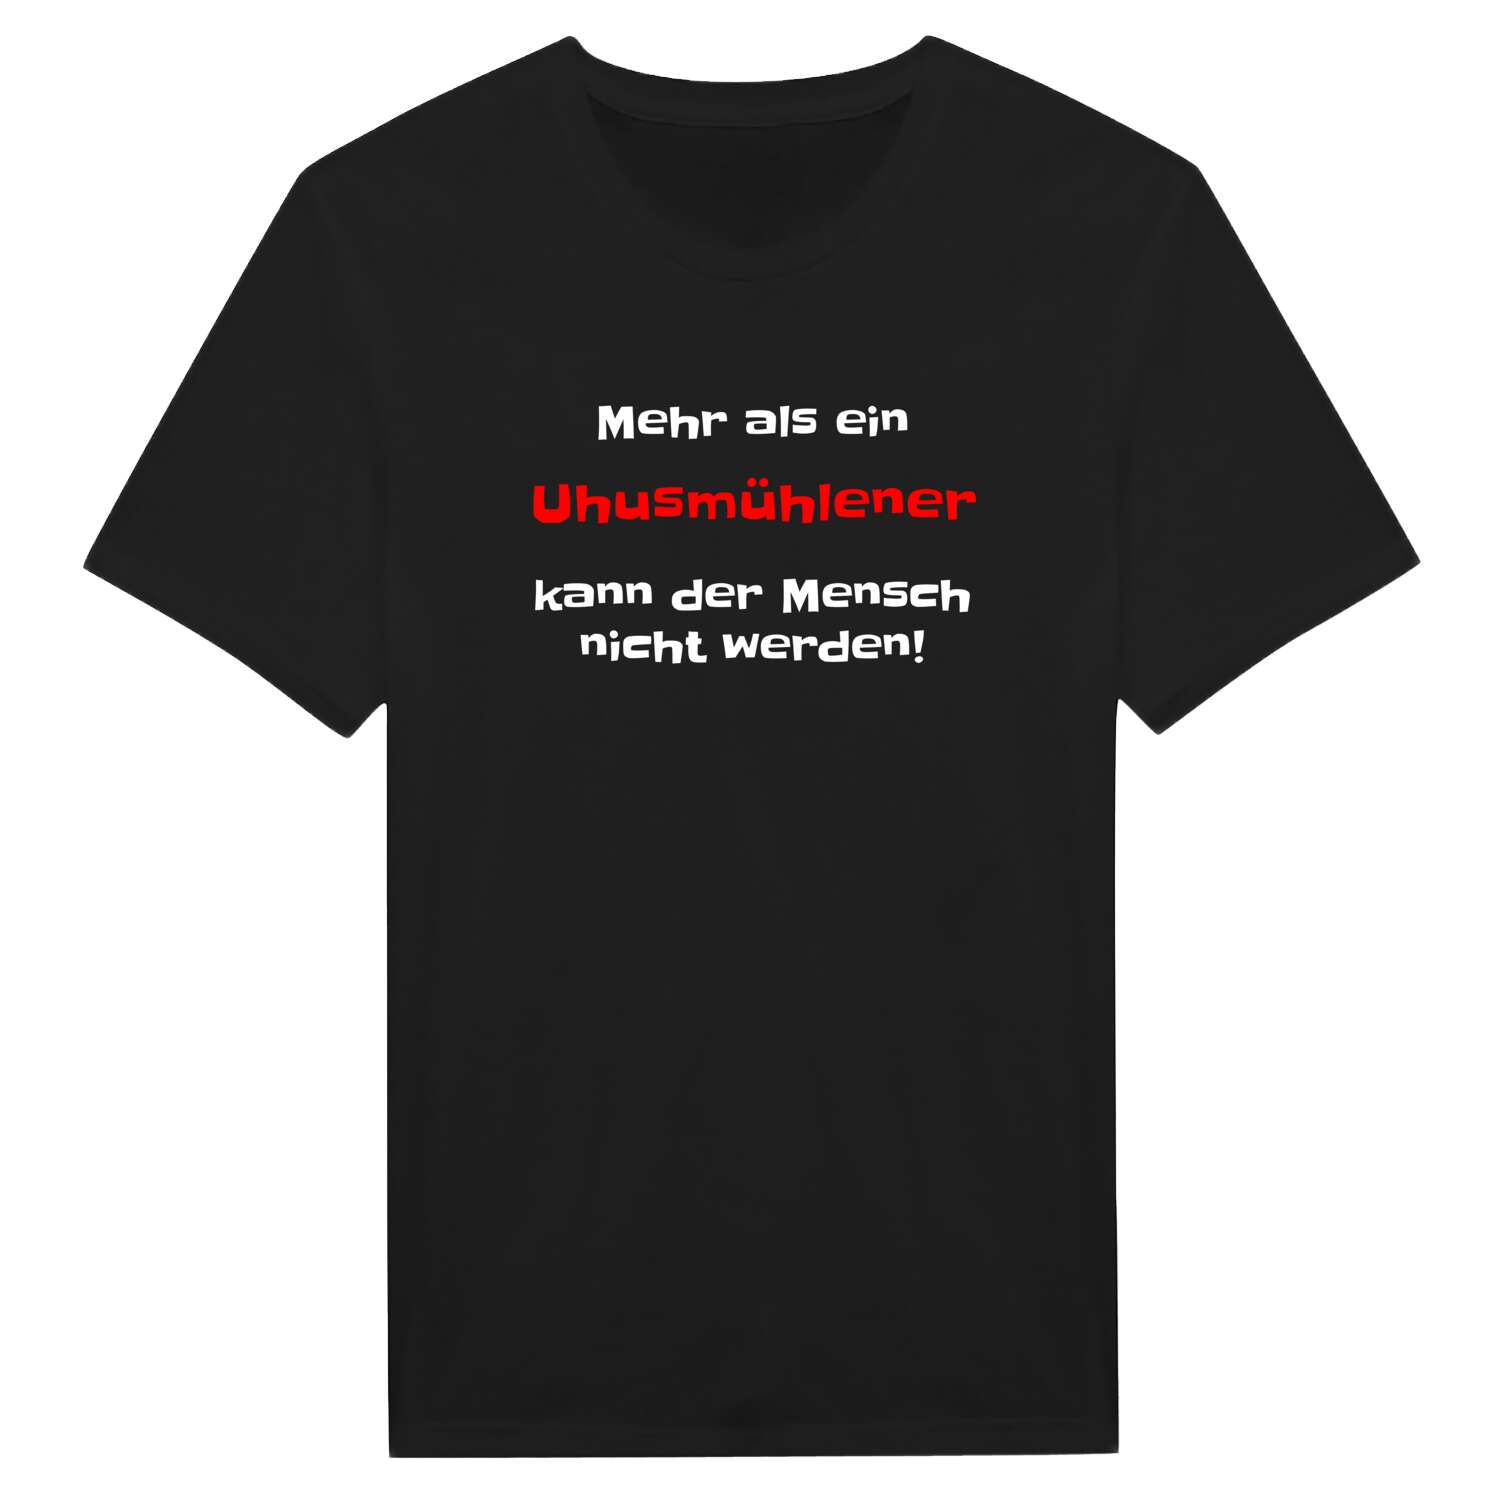 Uhusmühle T-Shirt »Mehr als ein«